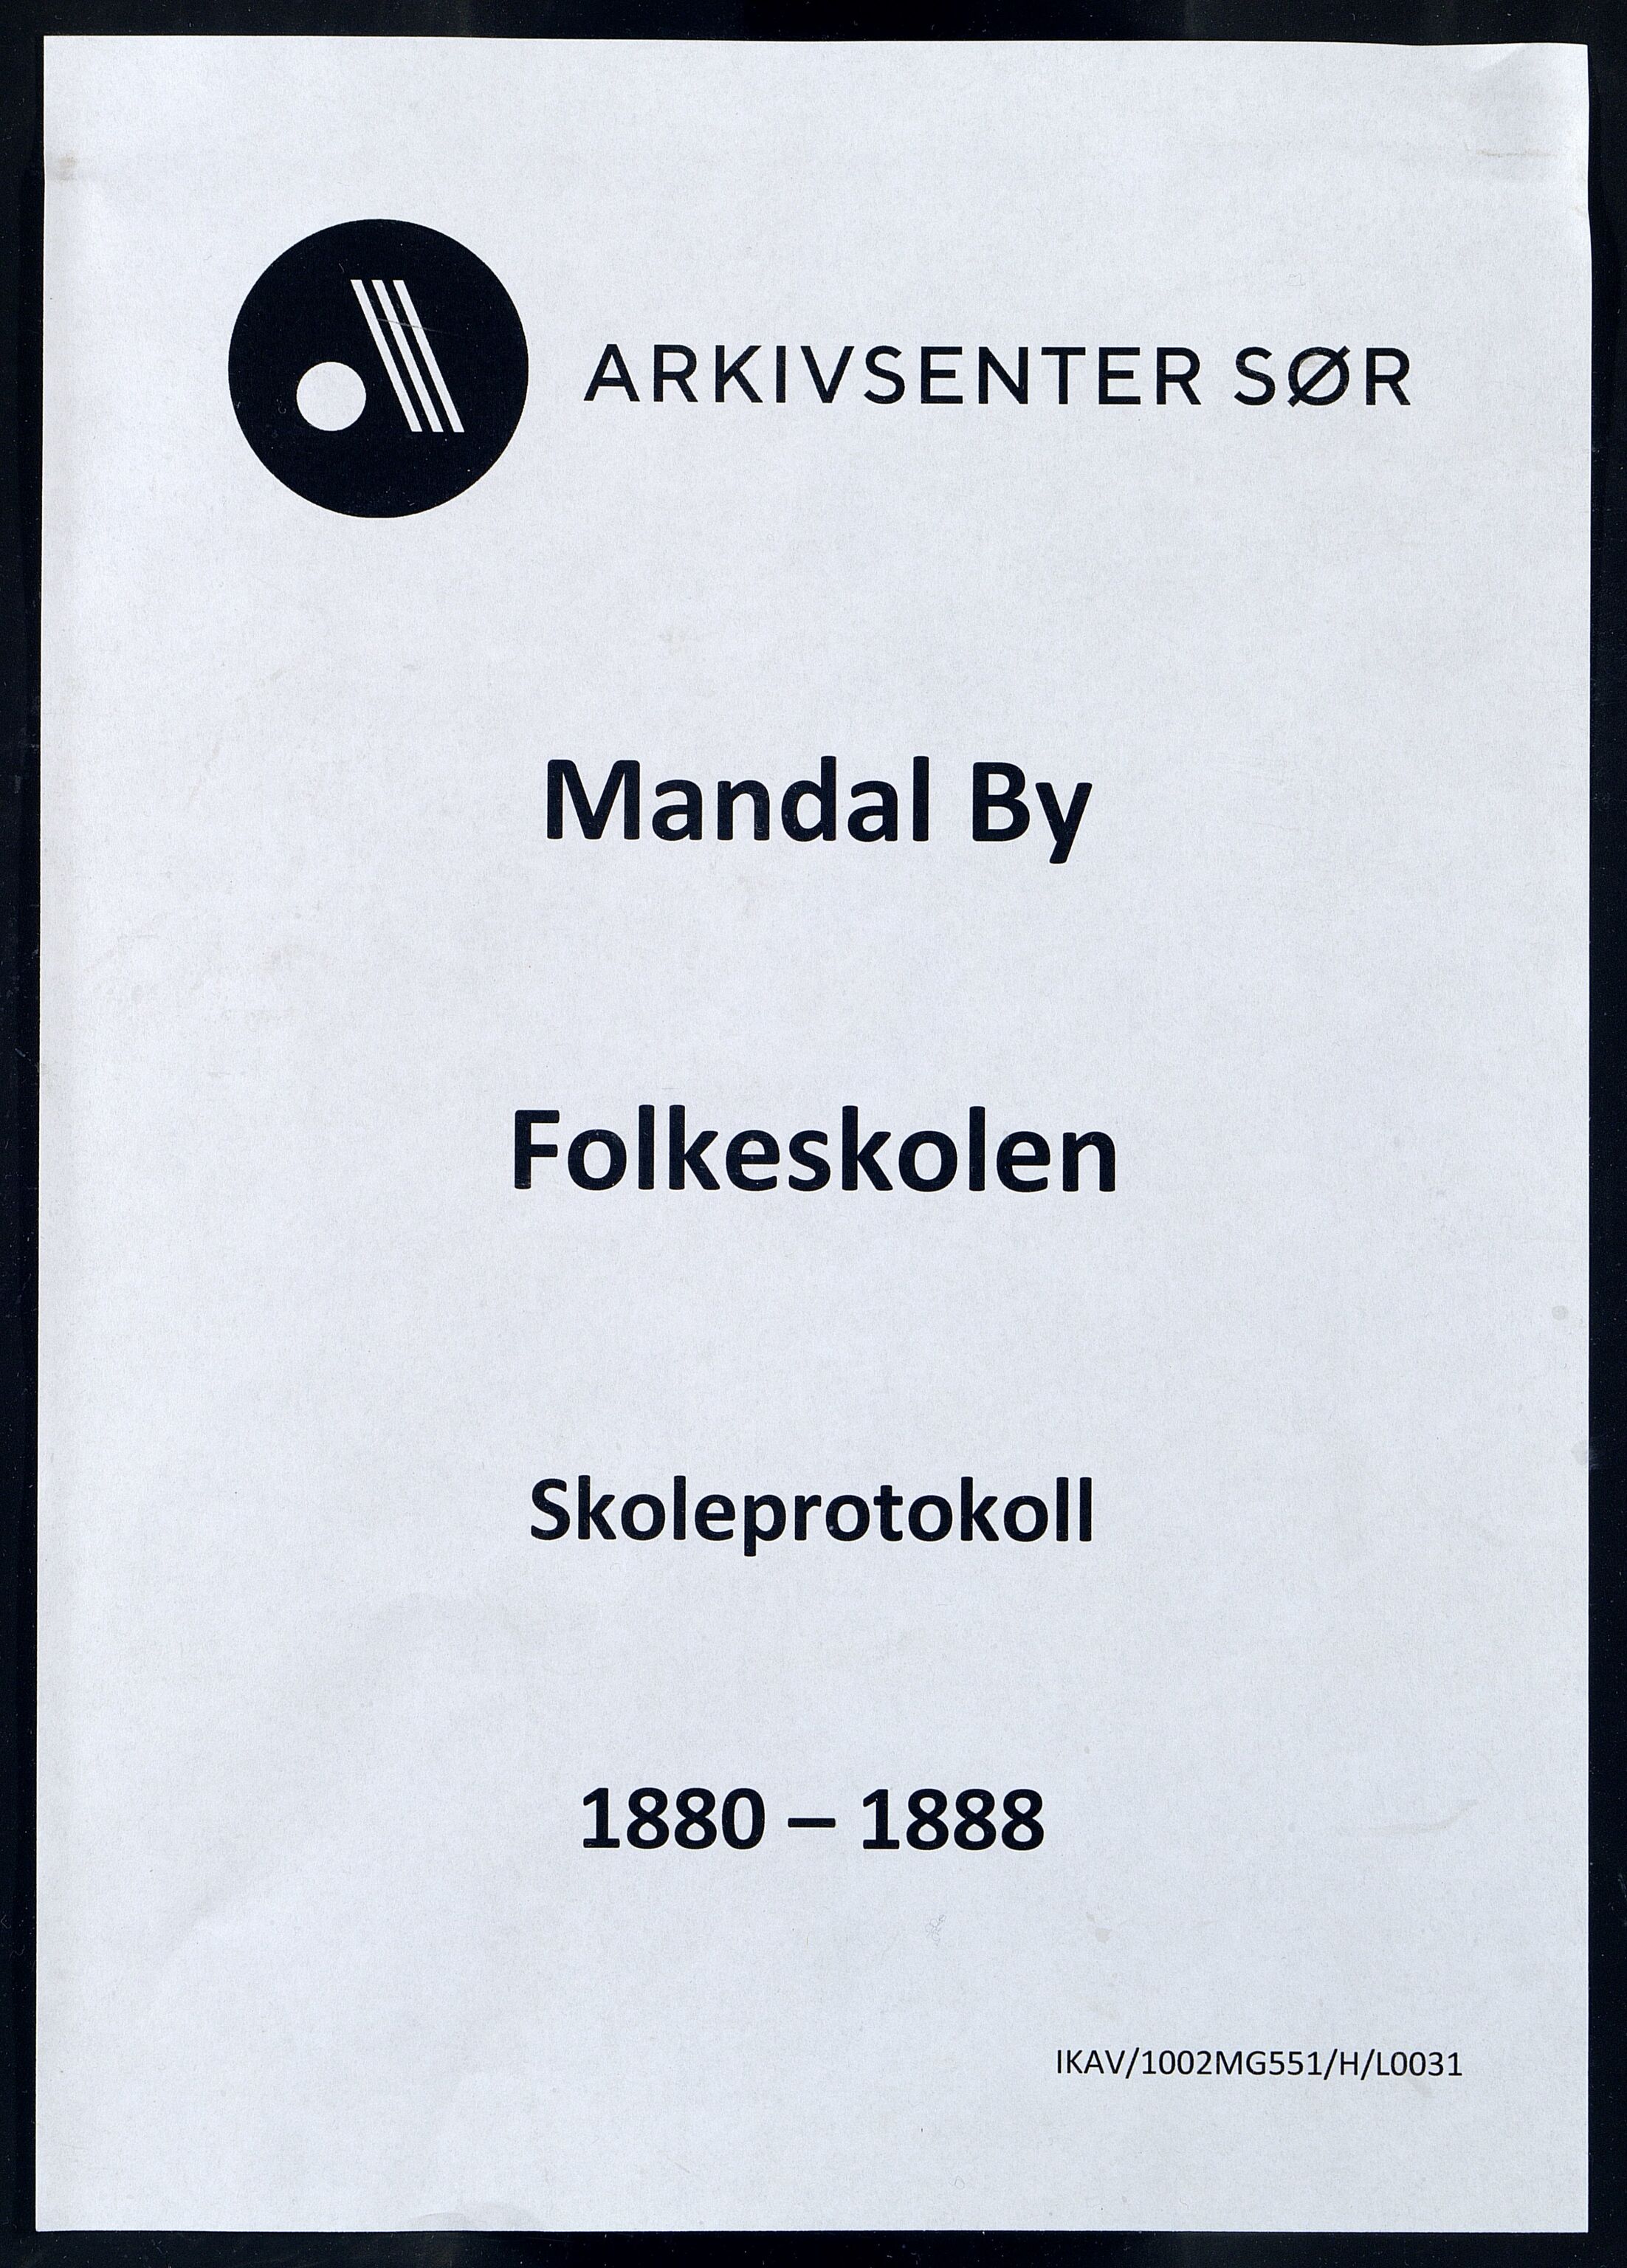 Mandal By - Mandal Allmueskole/Folkeskole/Skole, IKAV/1002MG551/H/L0031: Skoleprotokoll, 1880-1888